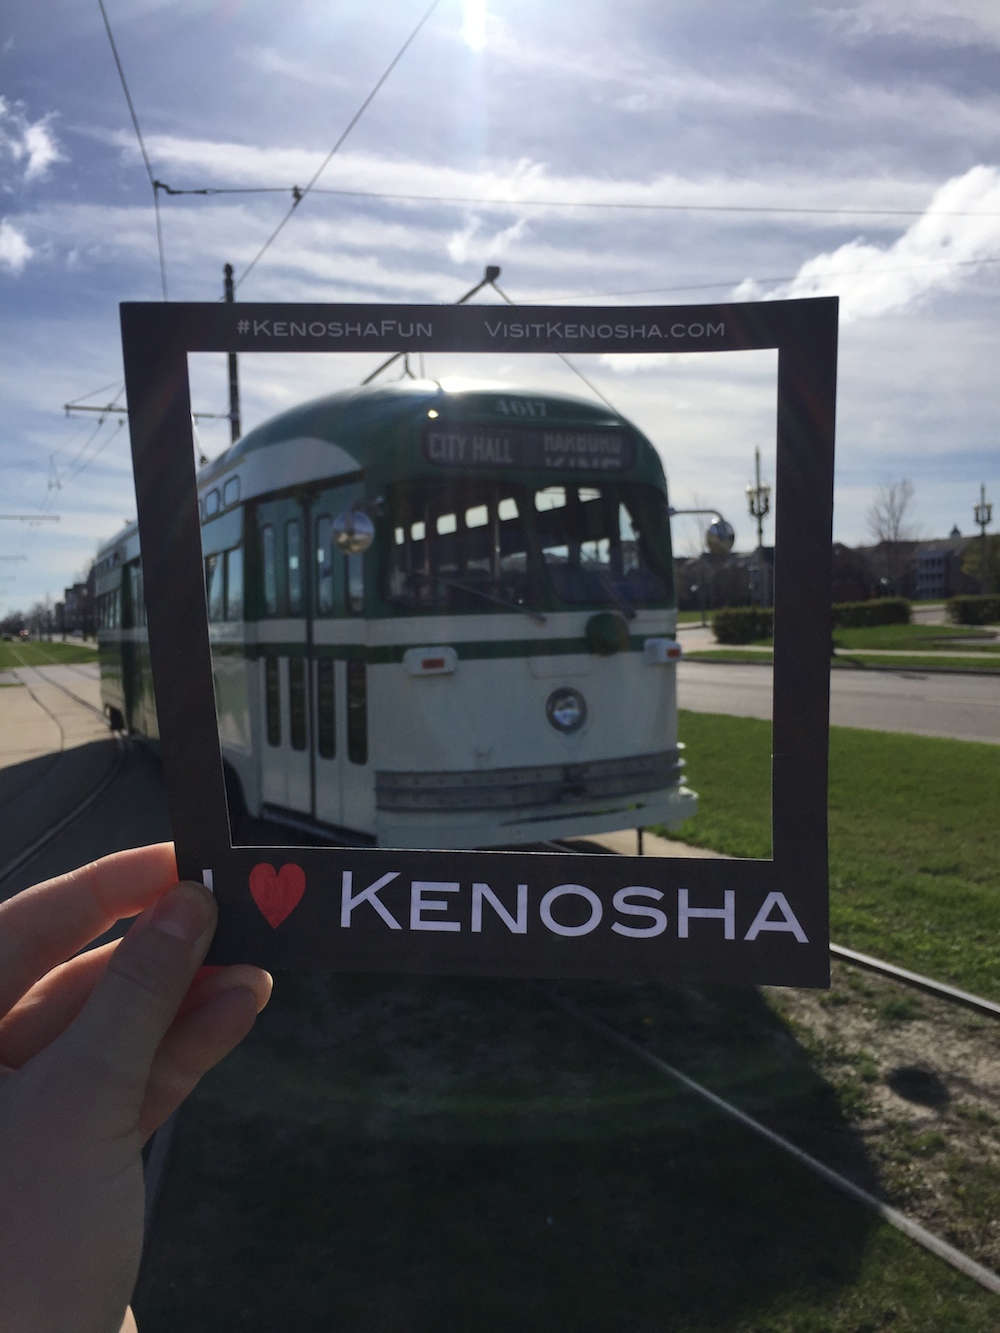 Historic trolley in "I heart Kenosha" photo frame in Kenosha, Wisconsin